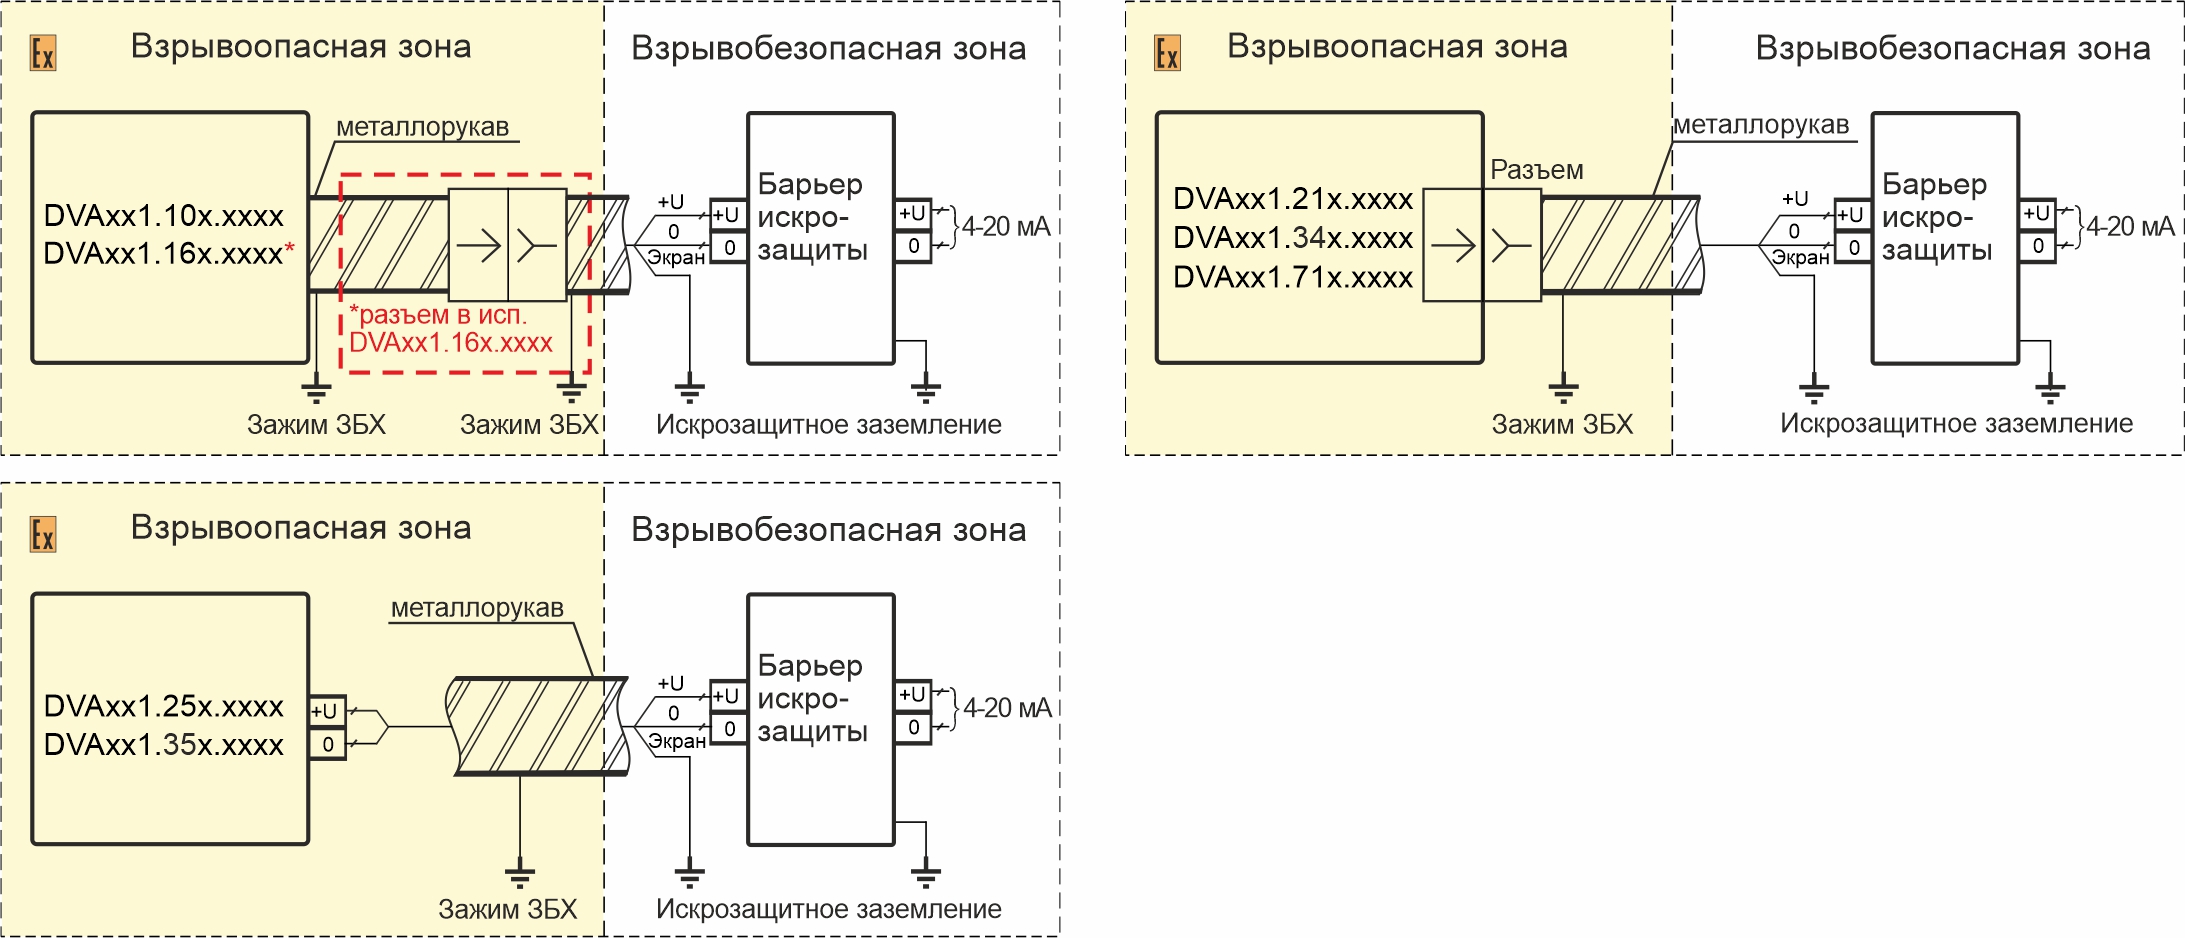 Схемы подключения датчиков виброперемещения DVA331.XXX